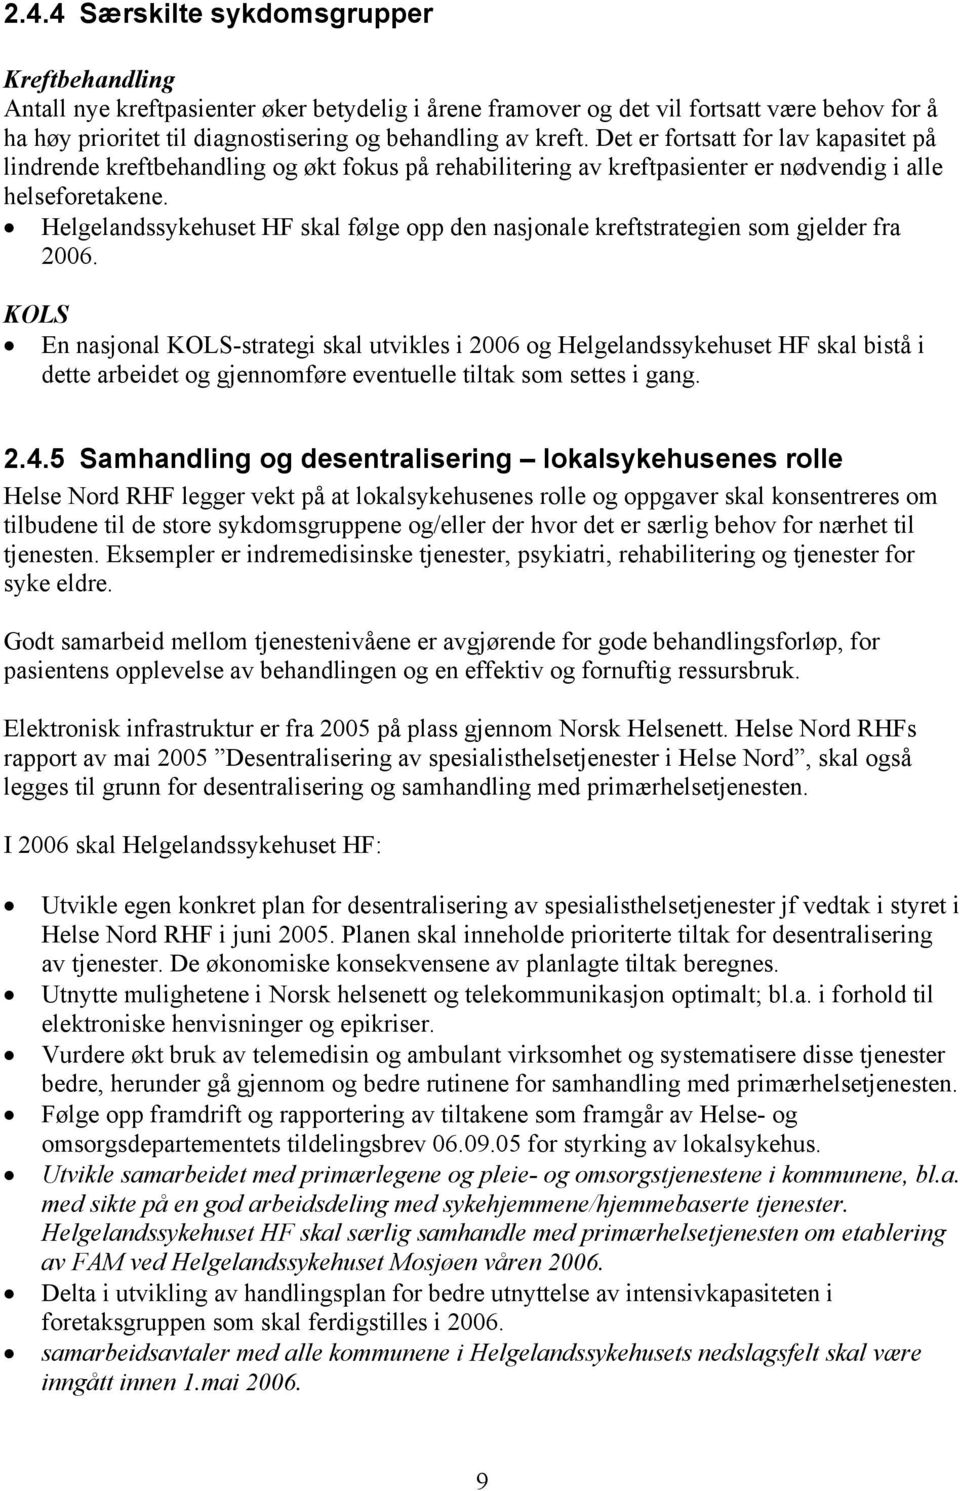 Helgelandssykehuset HF skal følge opp den nasjonale kreftstrategien som gjelder fra 2006.